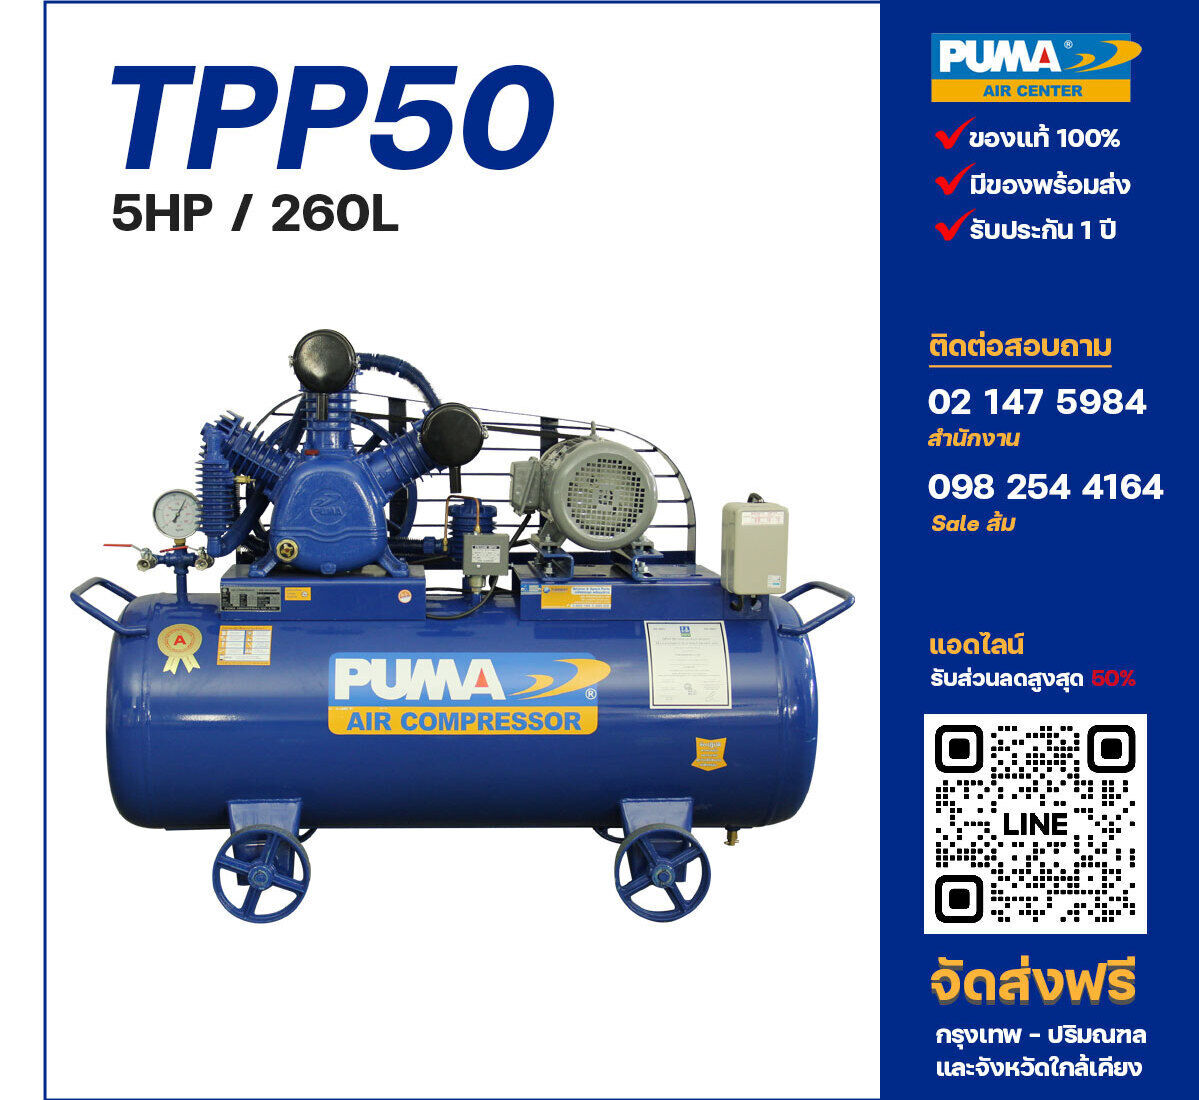 ปั๊มลมพูม่าแรงดันสูง PUMA Two-Stage TPP-50 ปั๊มลมลูกสูบ ขนาด 3 สูบ 5 แรงม้า 260 ลิตร PUMA พร้อมมอเตอร์ PUMA ไฟ 220V/380V ส่งฟรี กรุงเทพฯ-ปริมณฑล รับประกัน 1 ปี